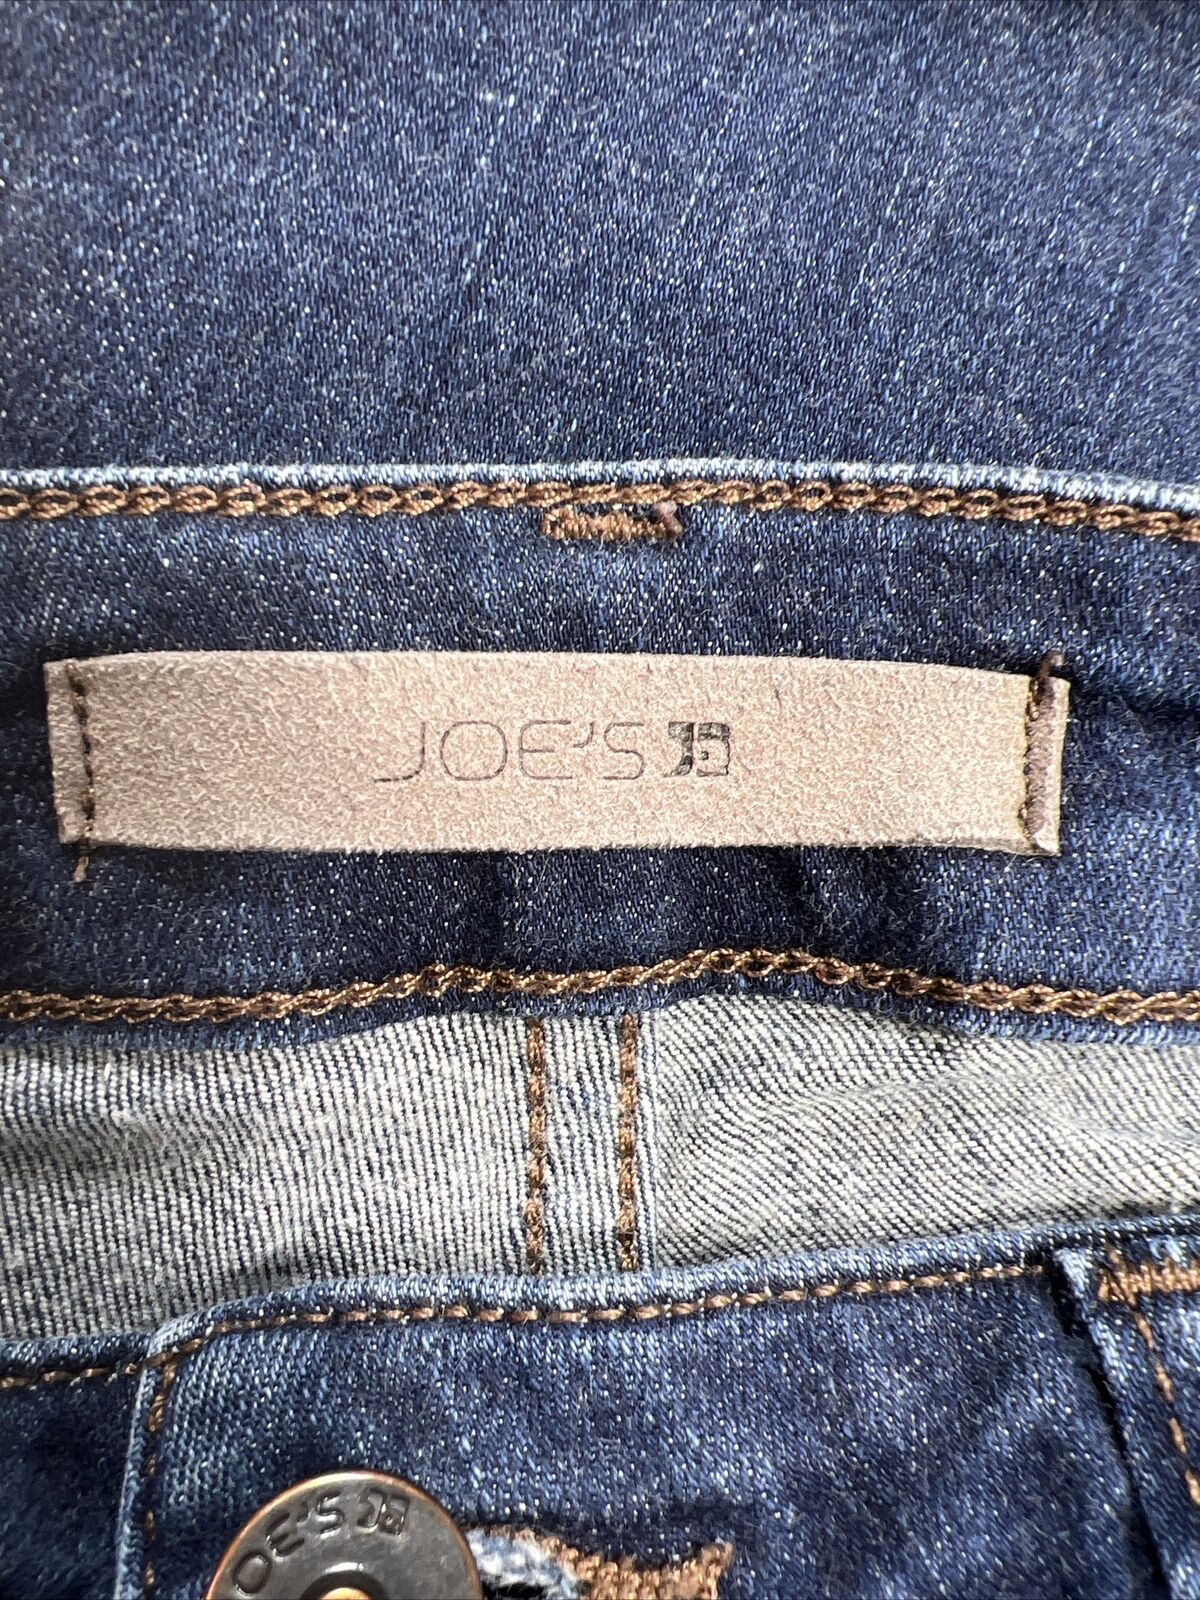 Joe's Jeans Vaqueros tobilleros ajustados elásticos con lavado oscuro para mujer - 27